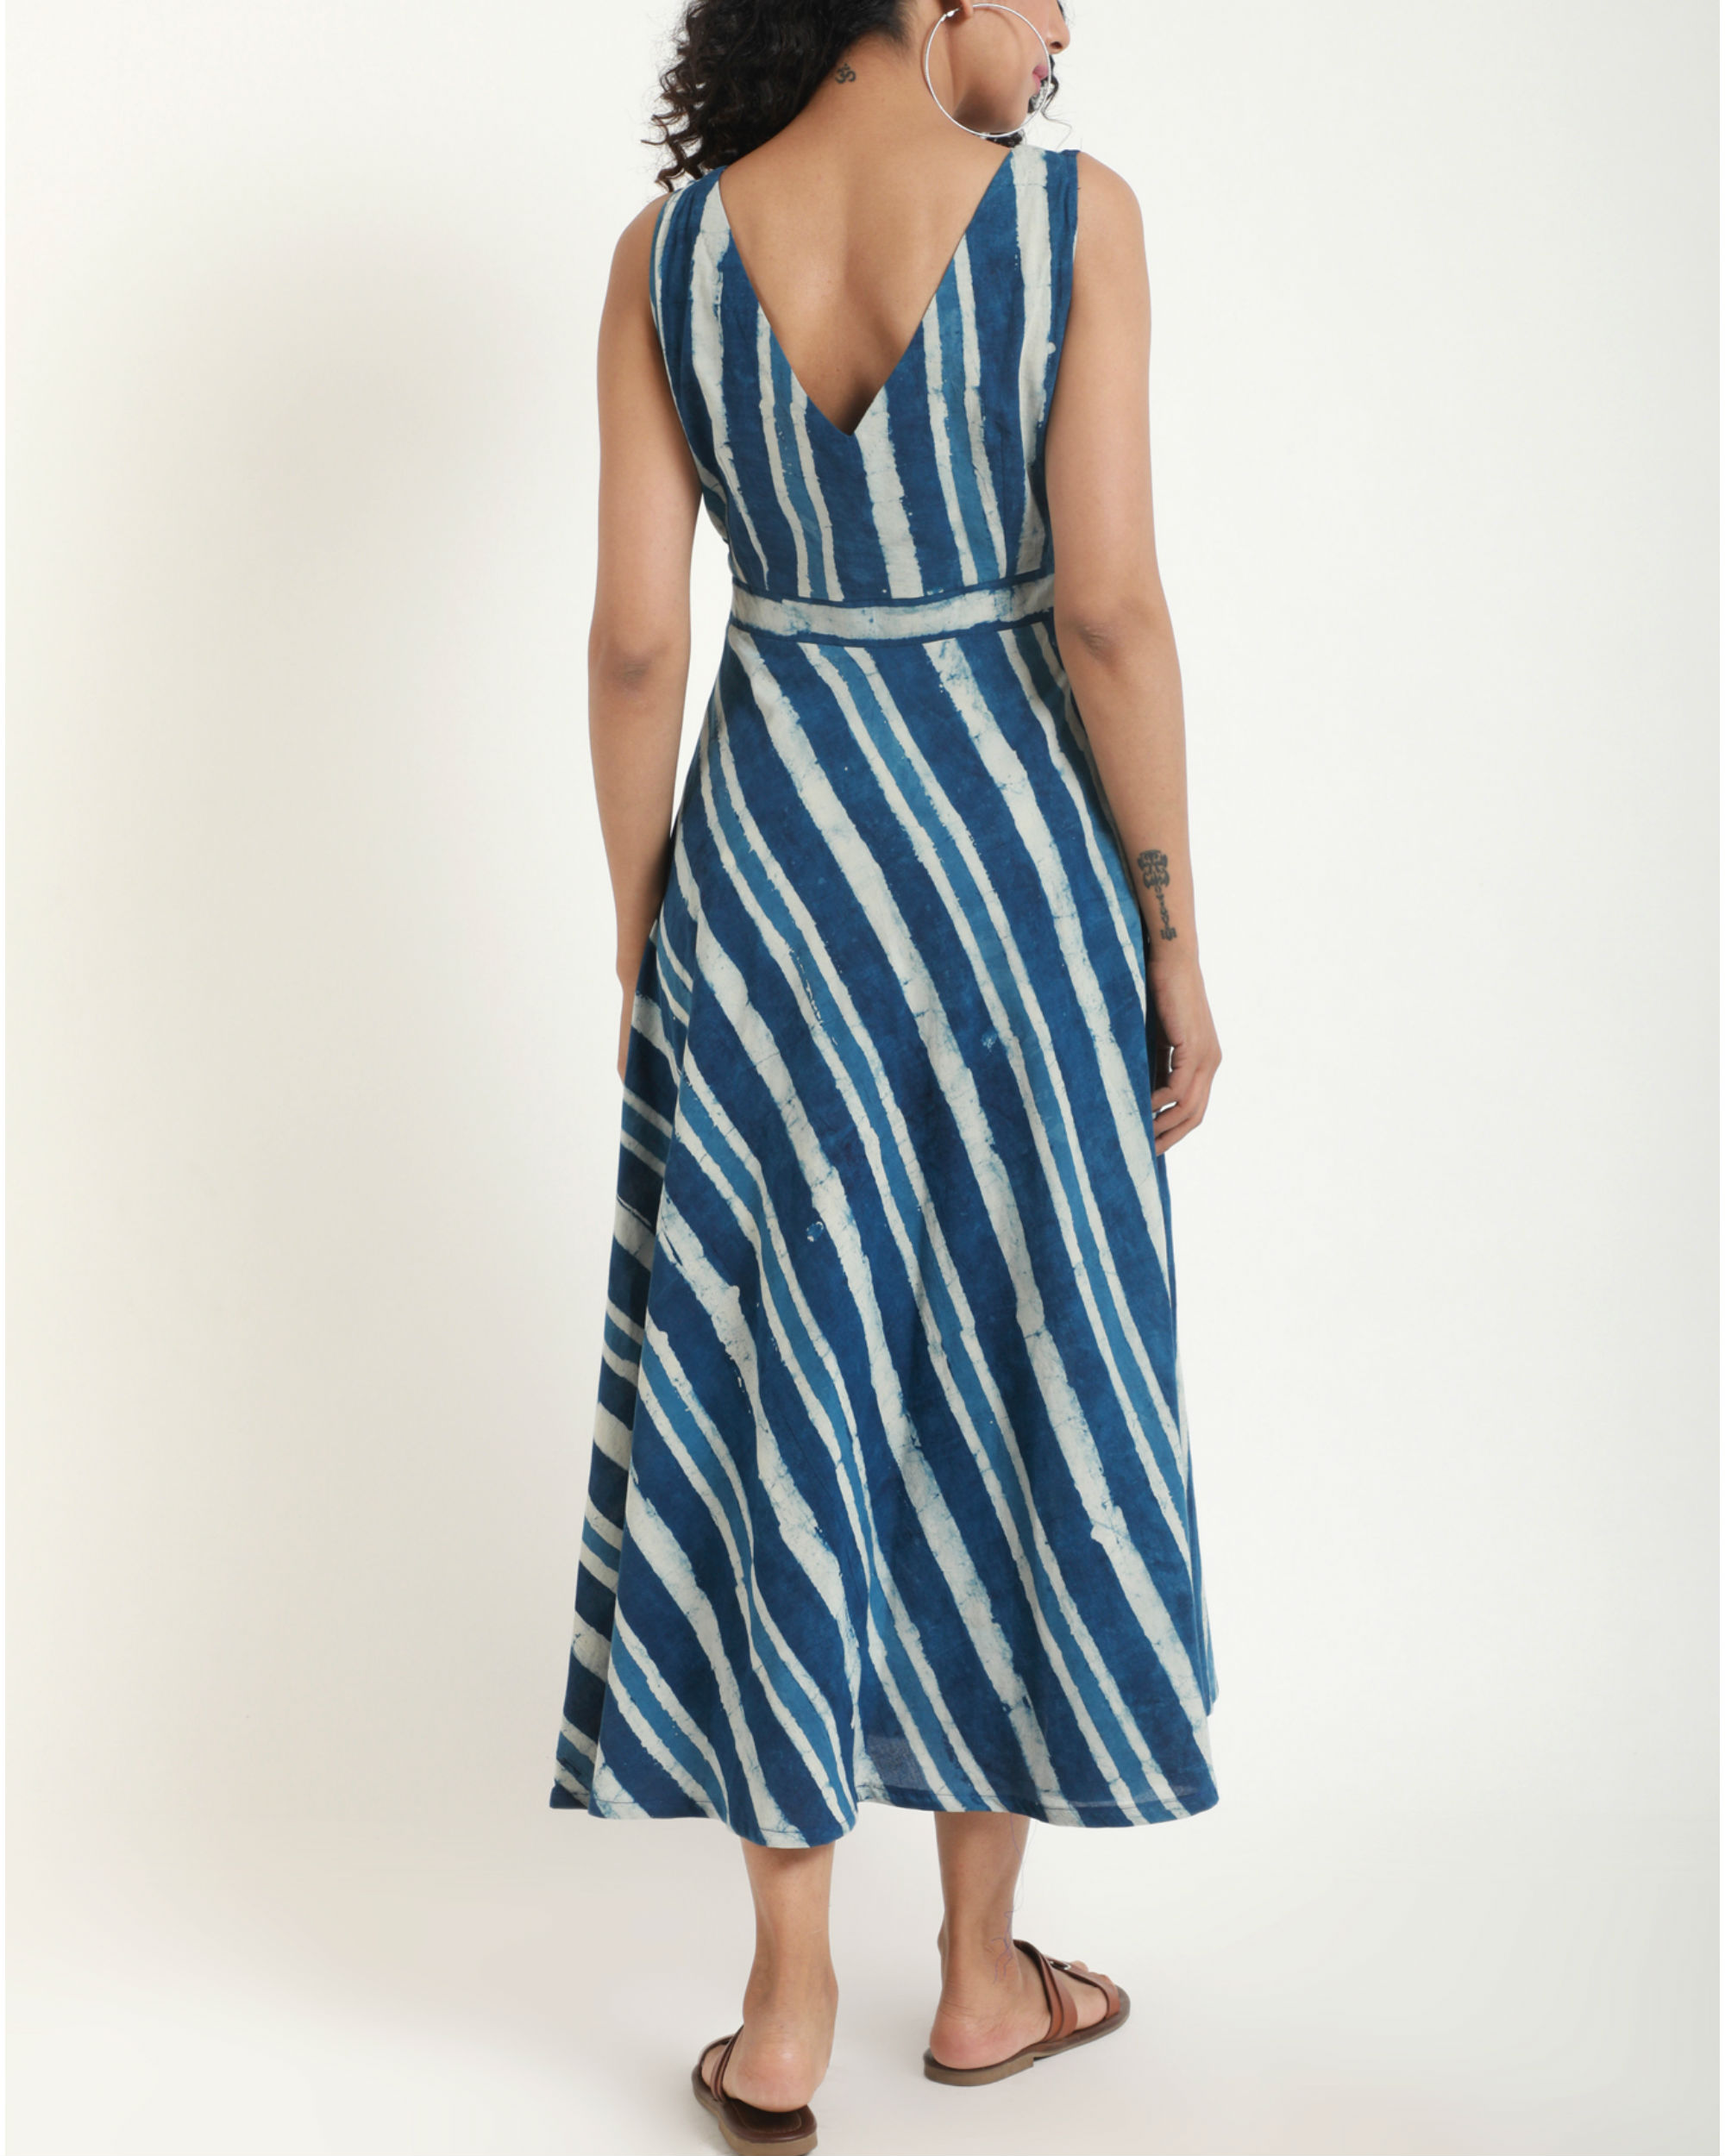 Blue stripe dress by trueBrowns | The Secret Label